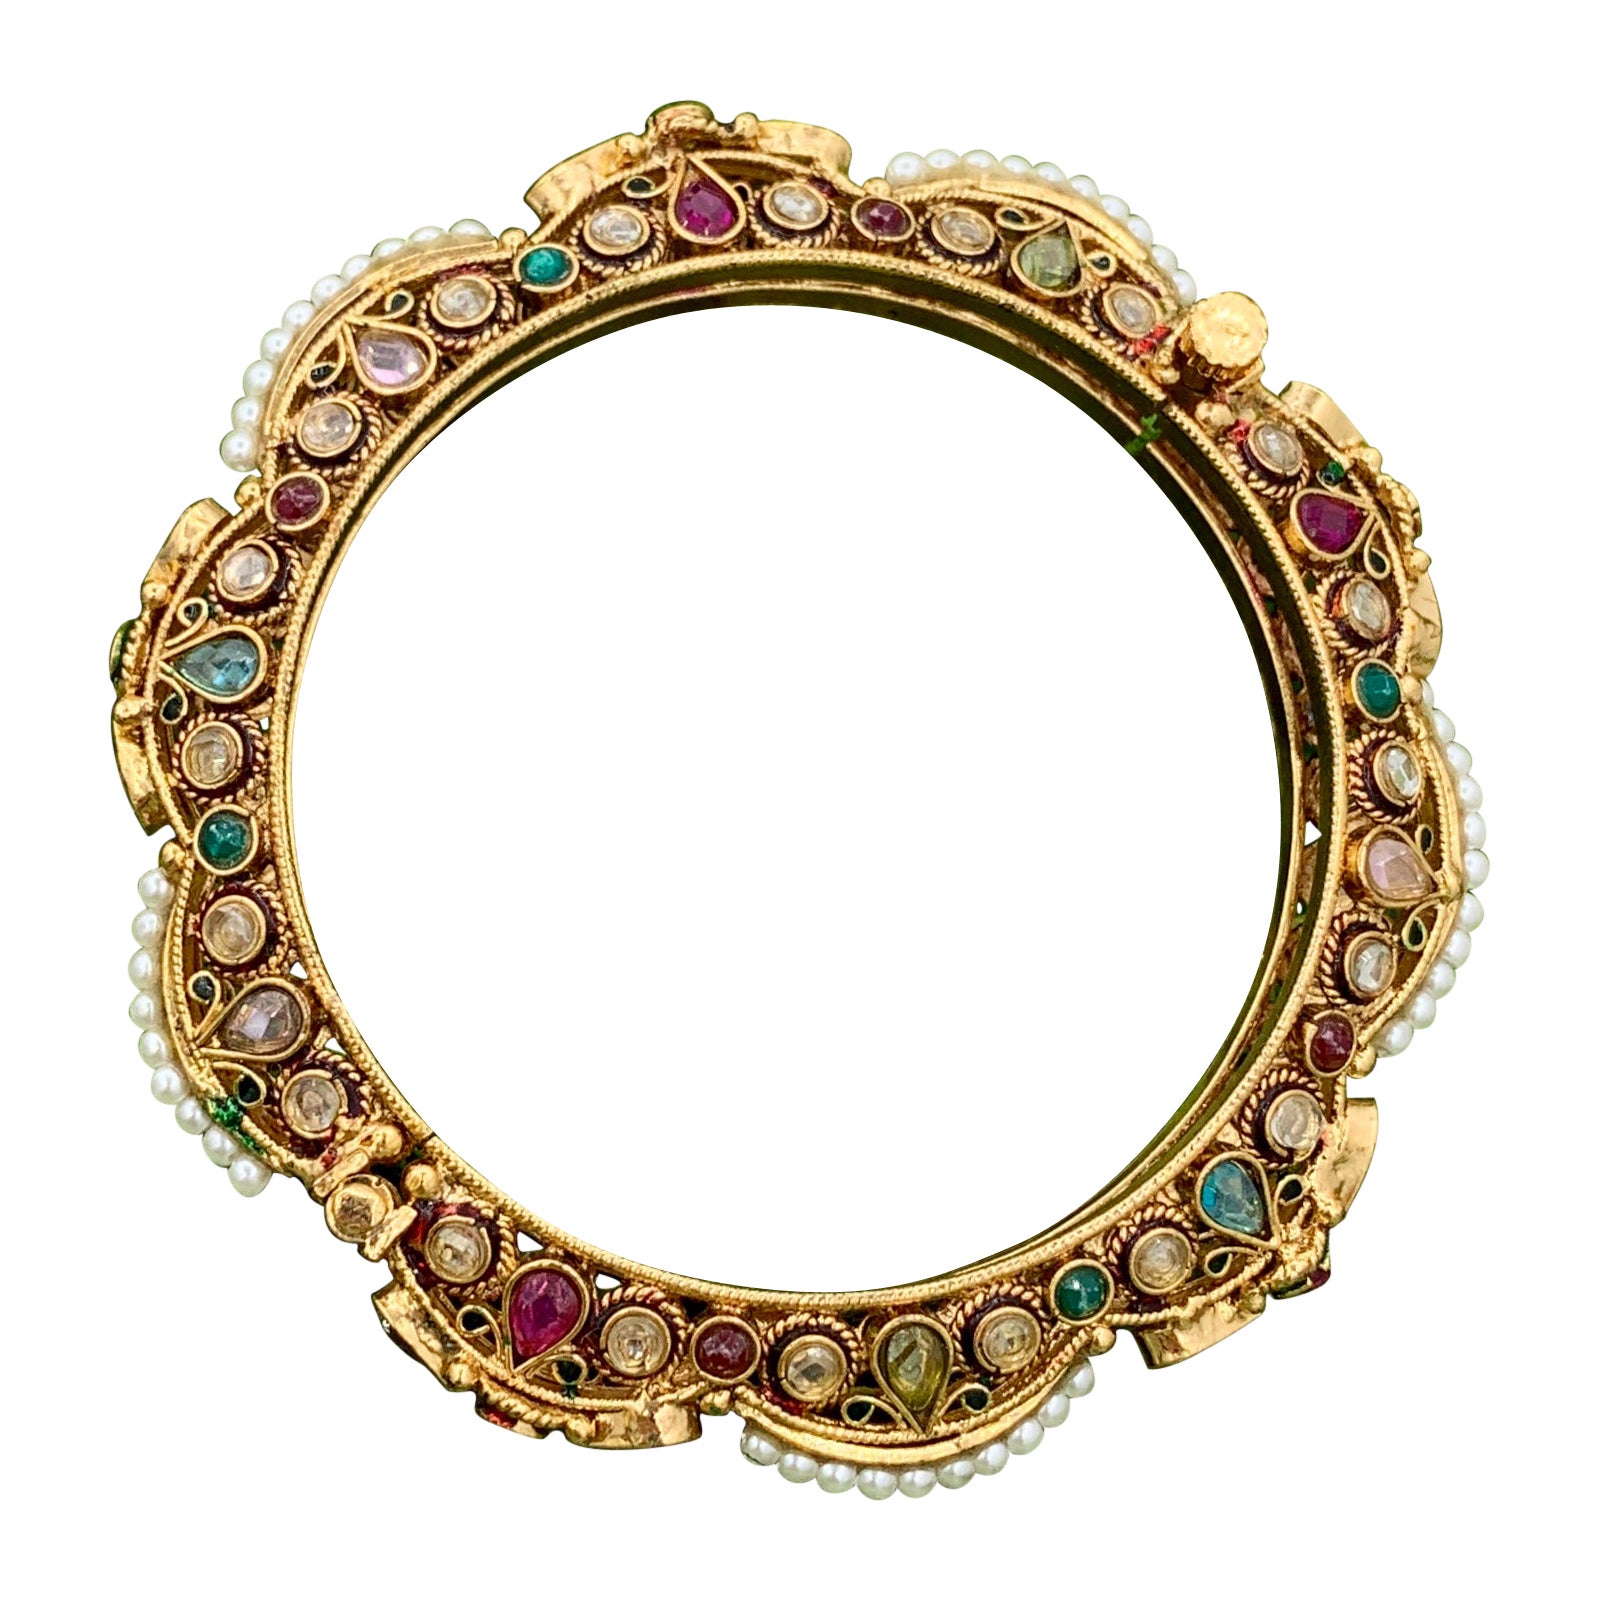 Bracelet de mariage moghol ancien, émeraude, rubis, péridot, topaze, perle, pour mariage indien